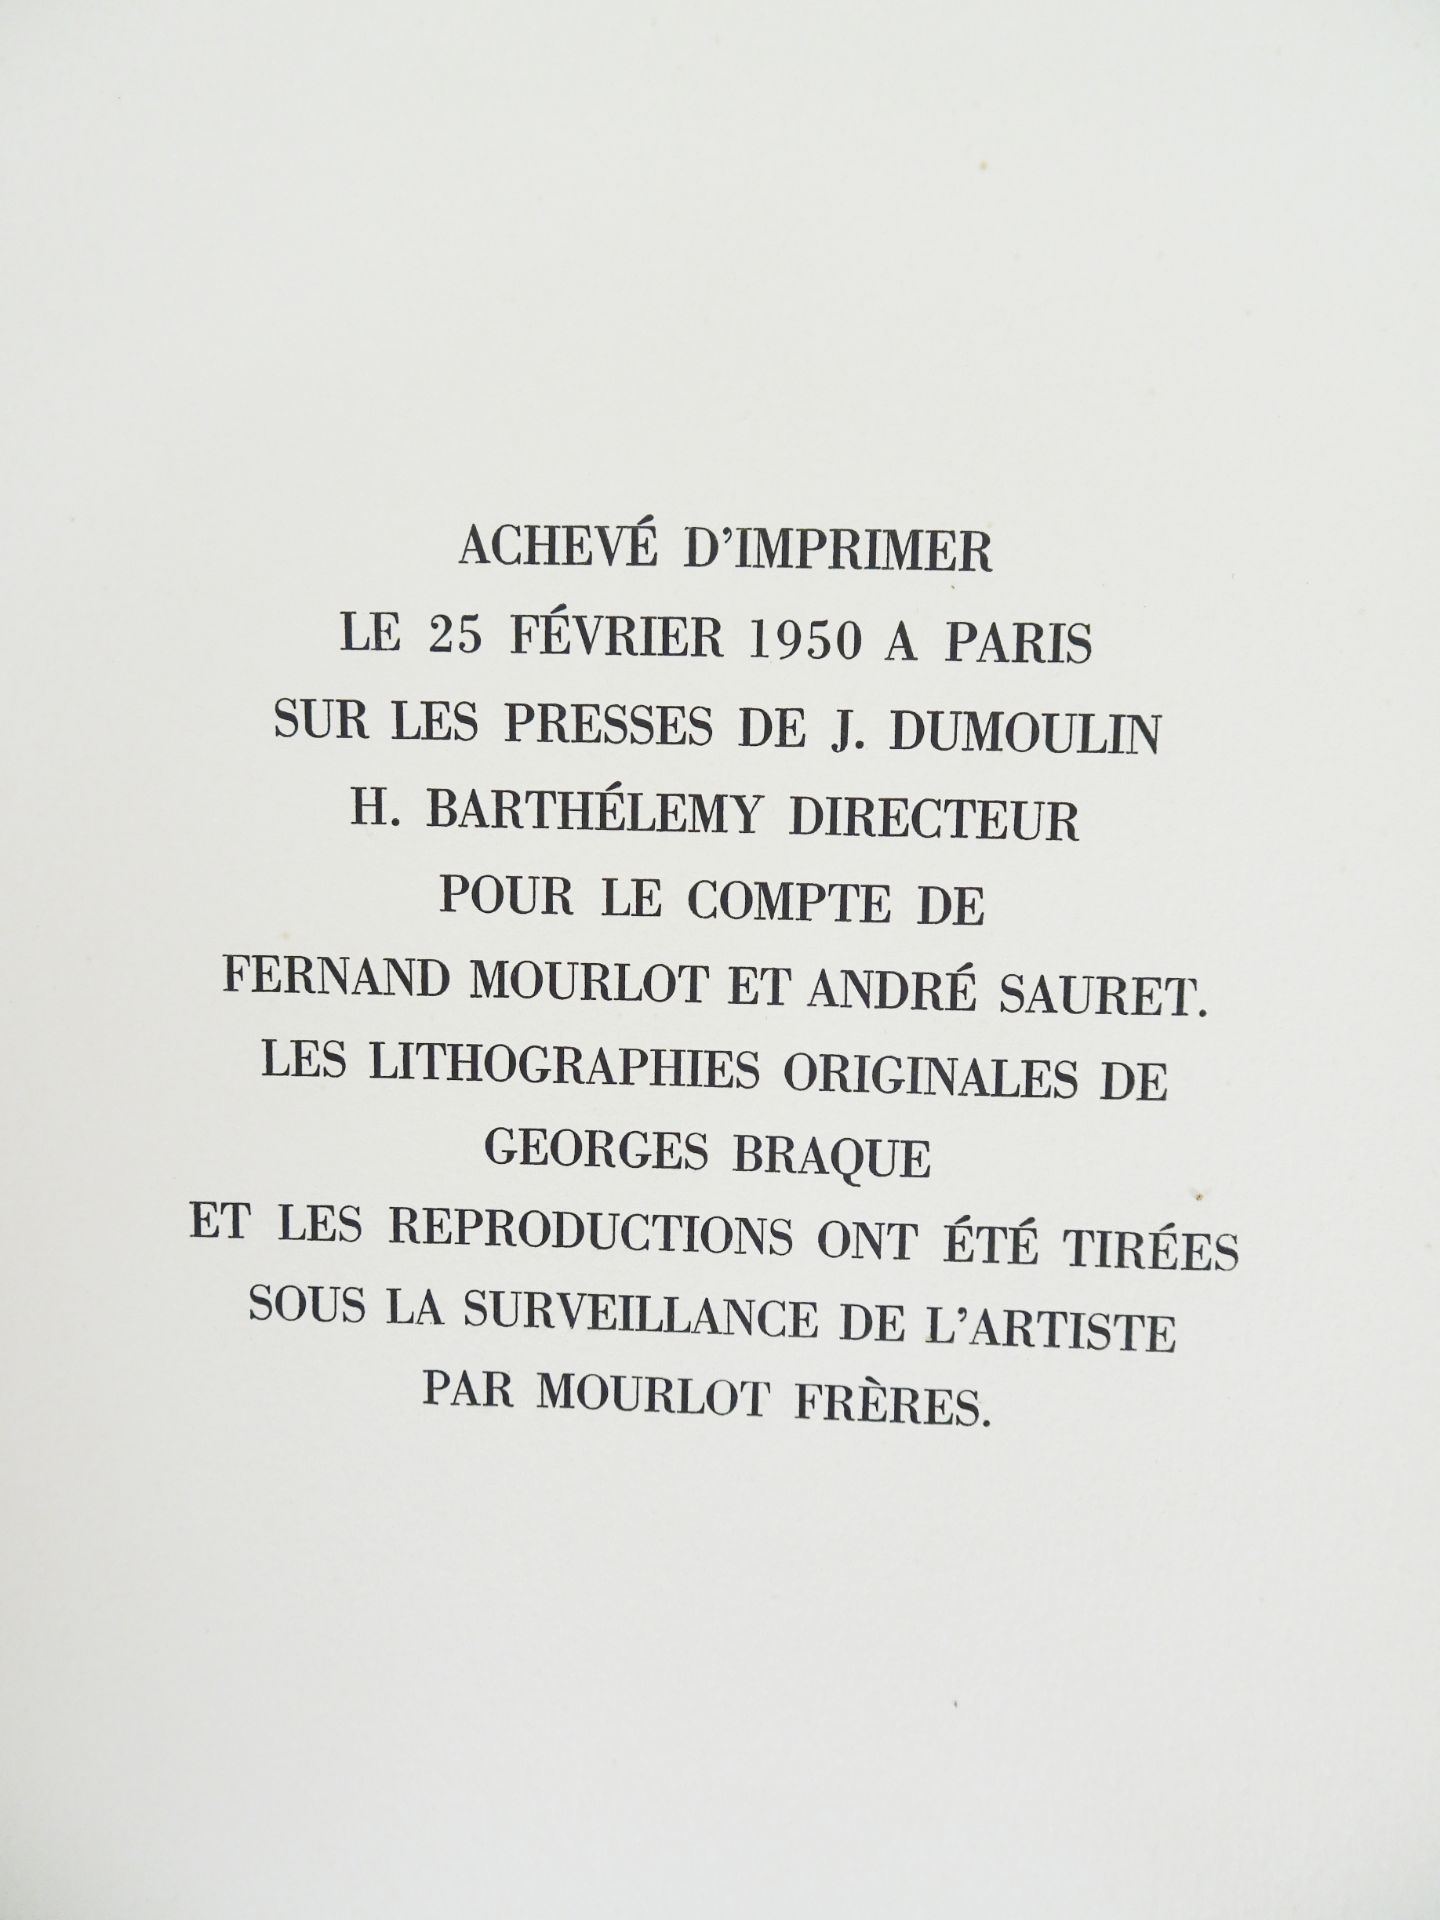 |Art| Braque George & REVERDY Pierre, "Une Aventure méthodique" - signé par l'artiste, 1950 - Image 17 of 17